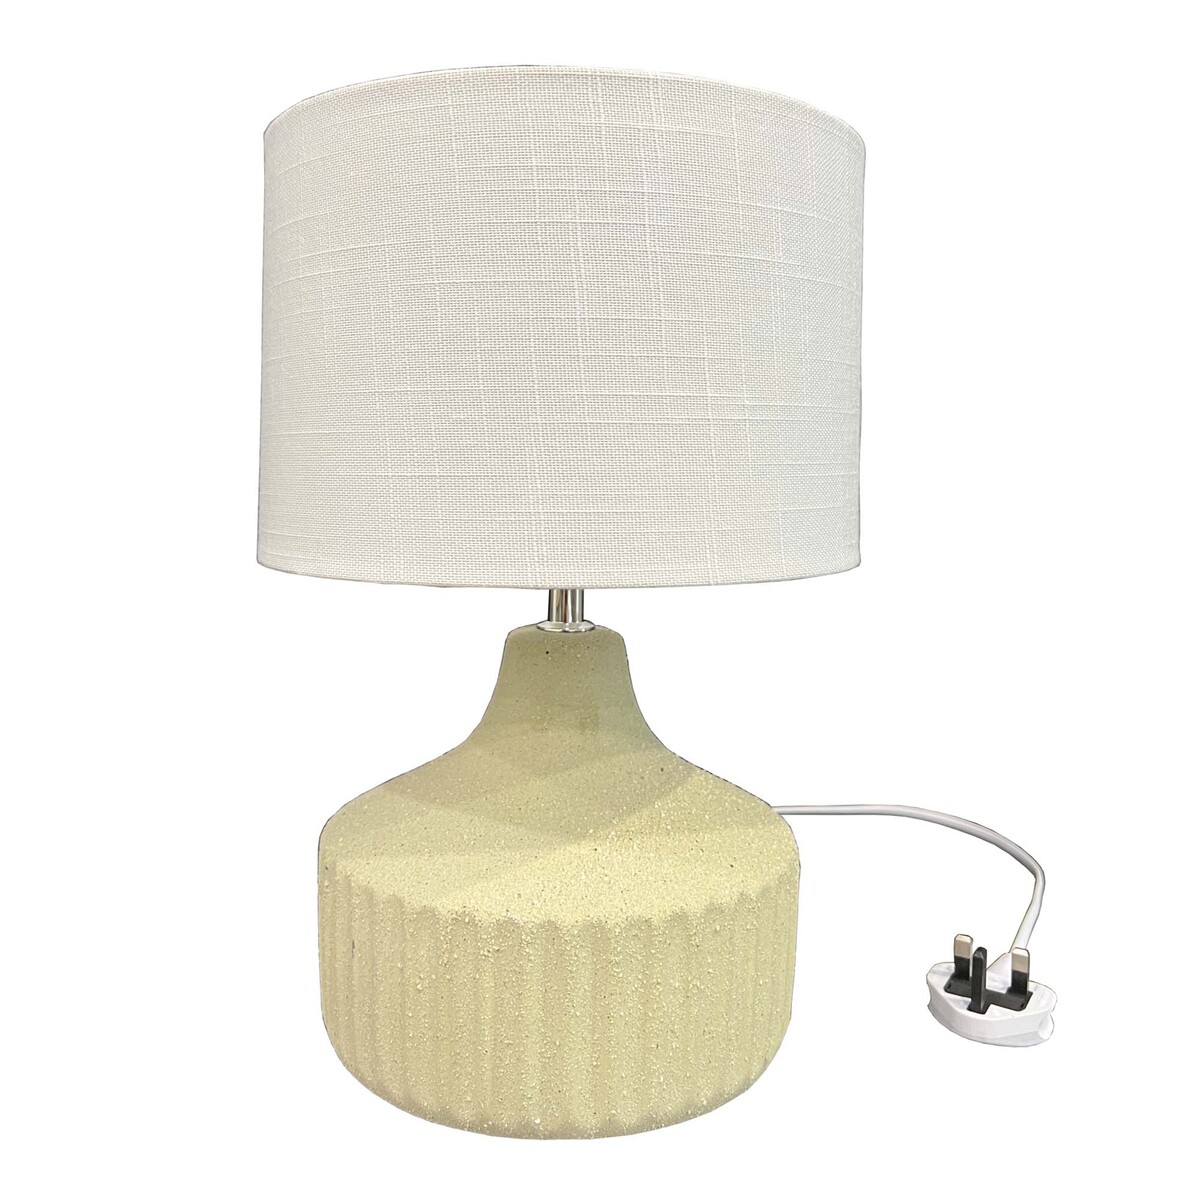 Maple Leaf Ceramic Table Lamp Beige